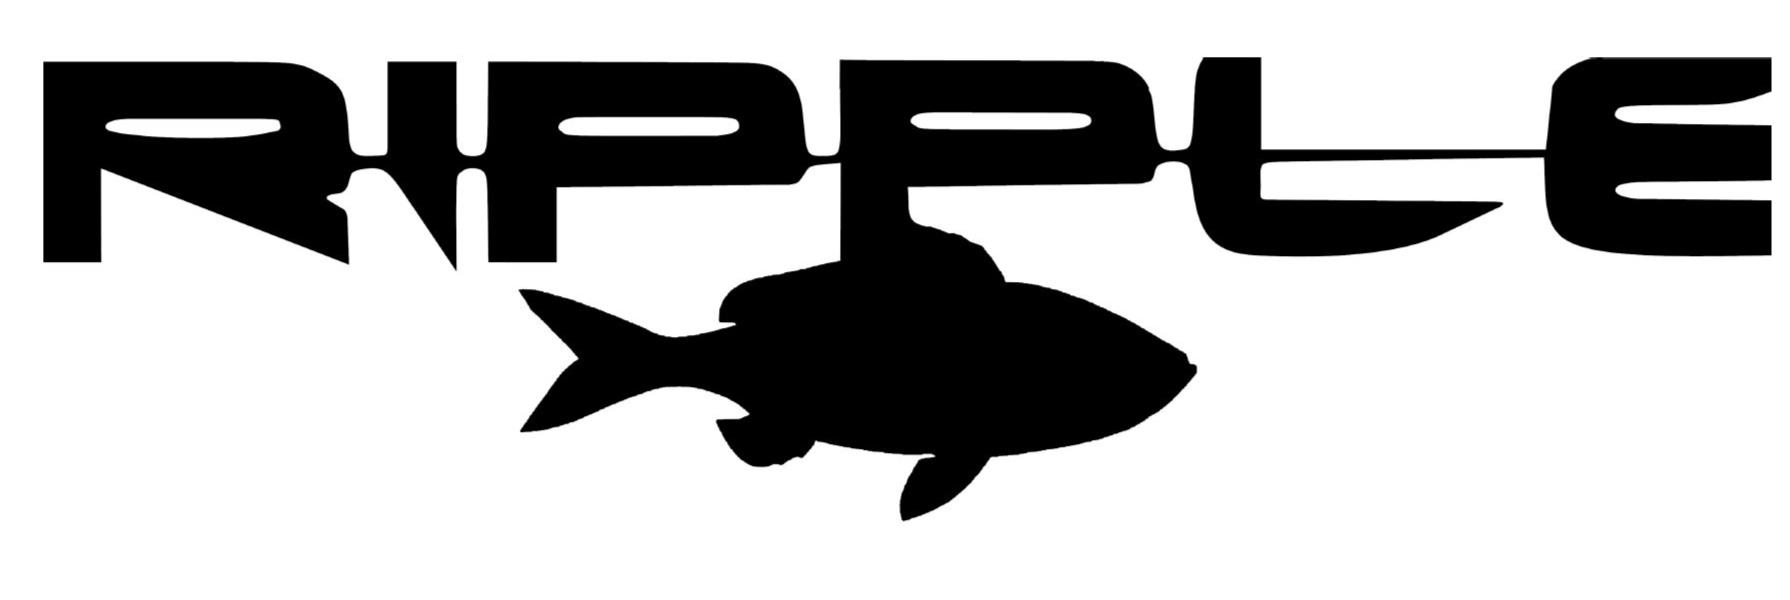 Trademark Logo RIPPLE